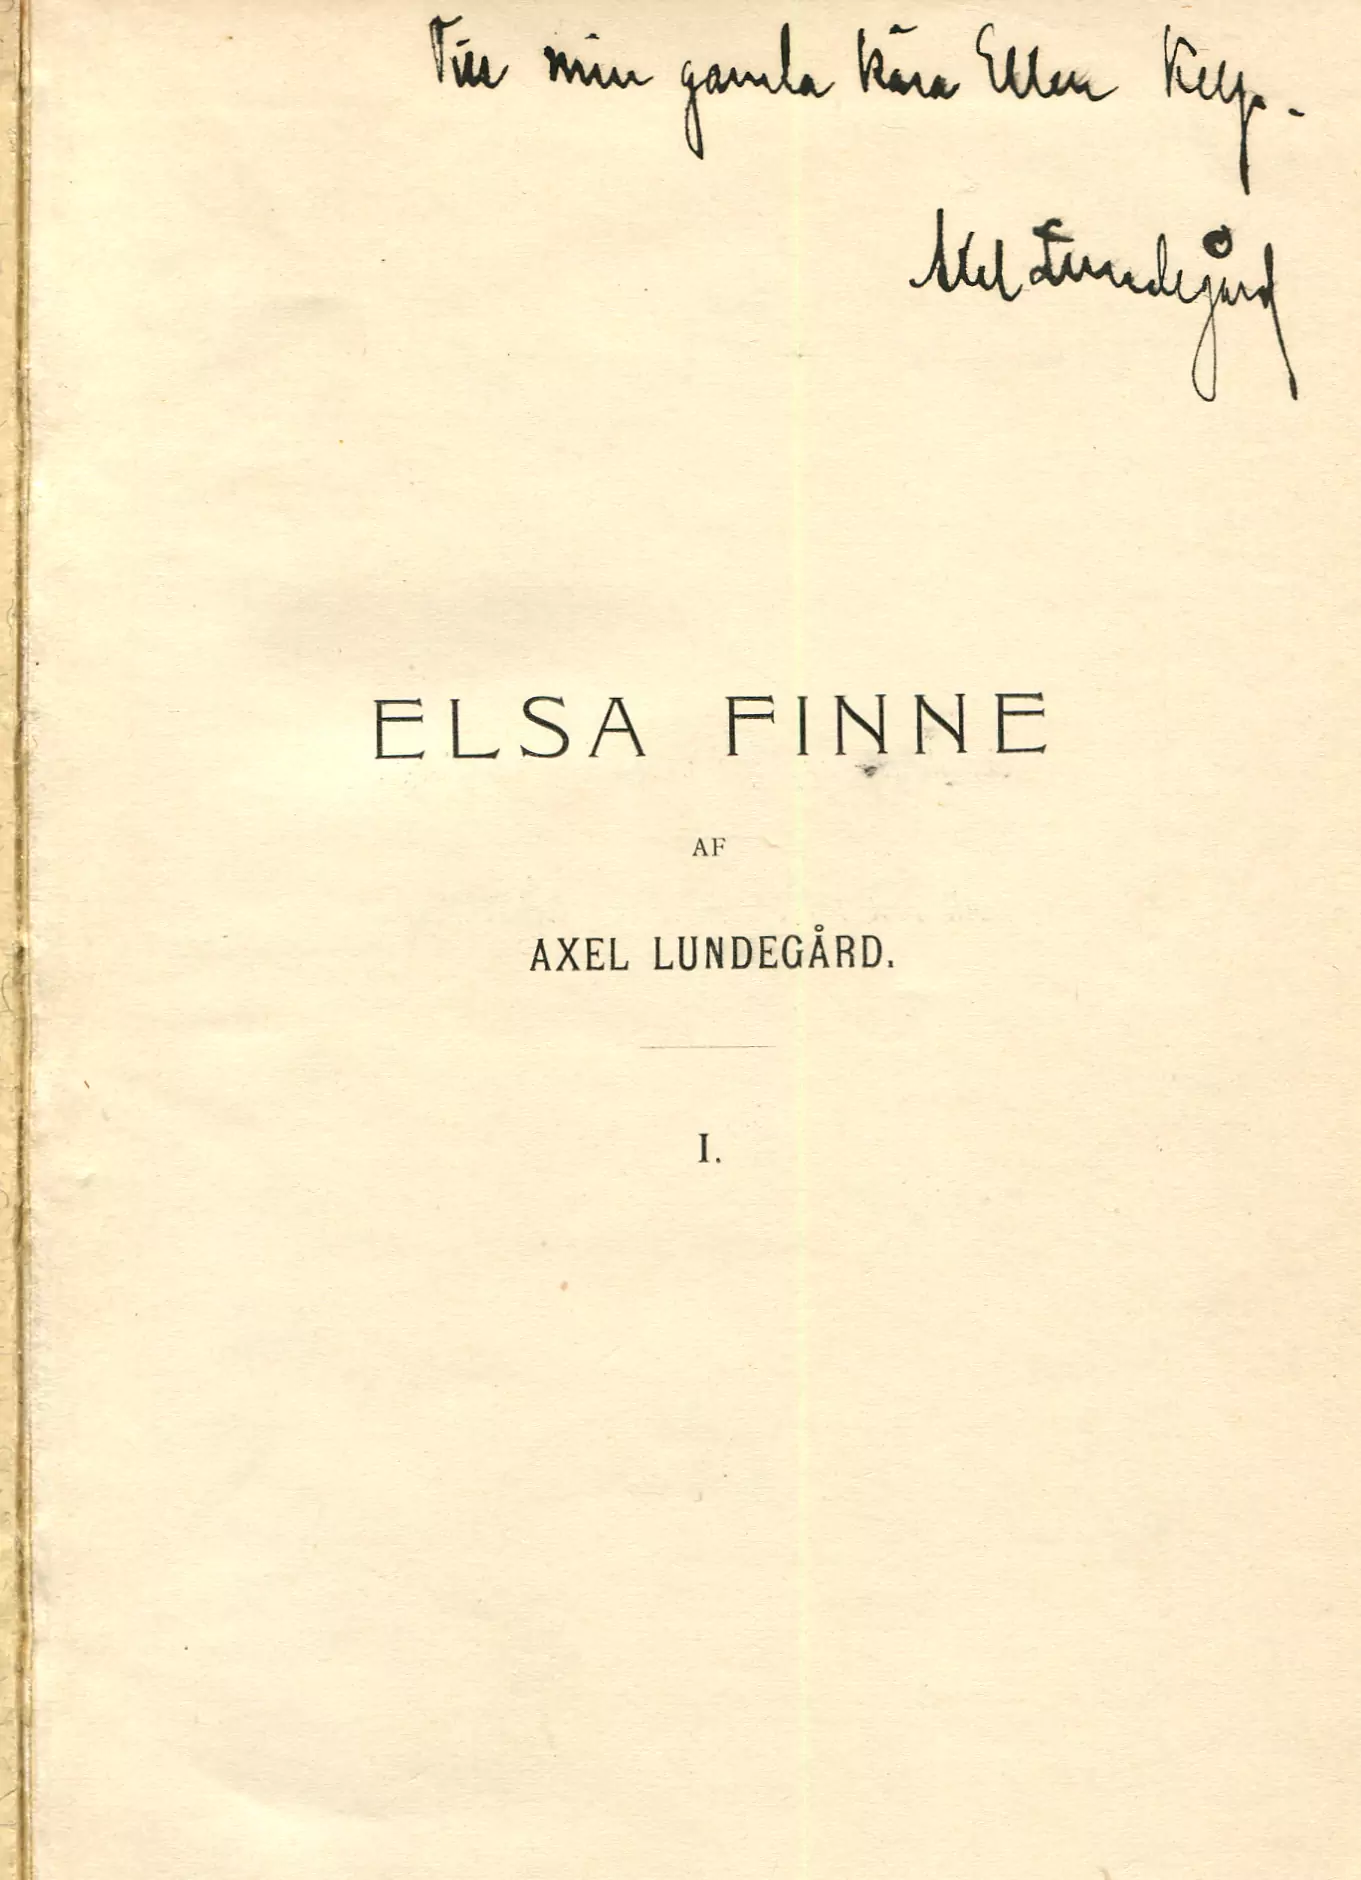 Elsa Finne 1, Stockholm 1902